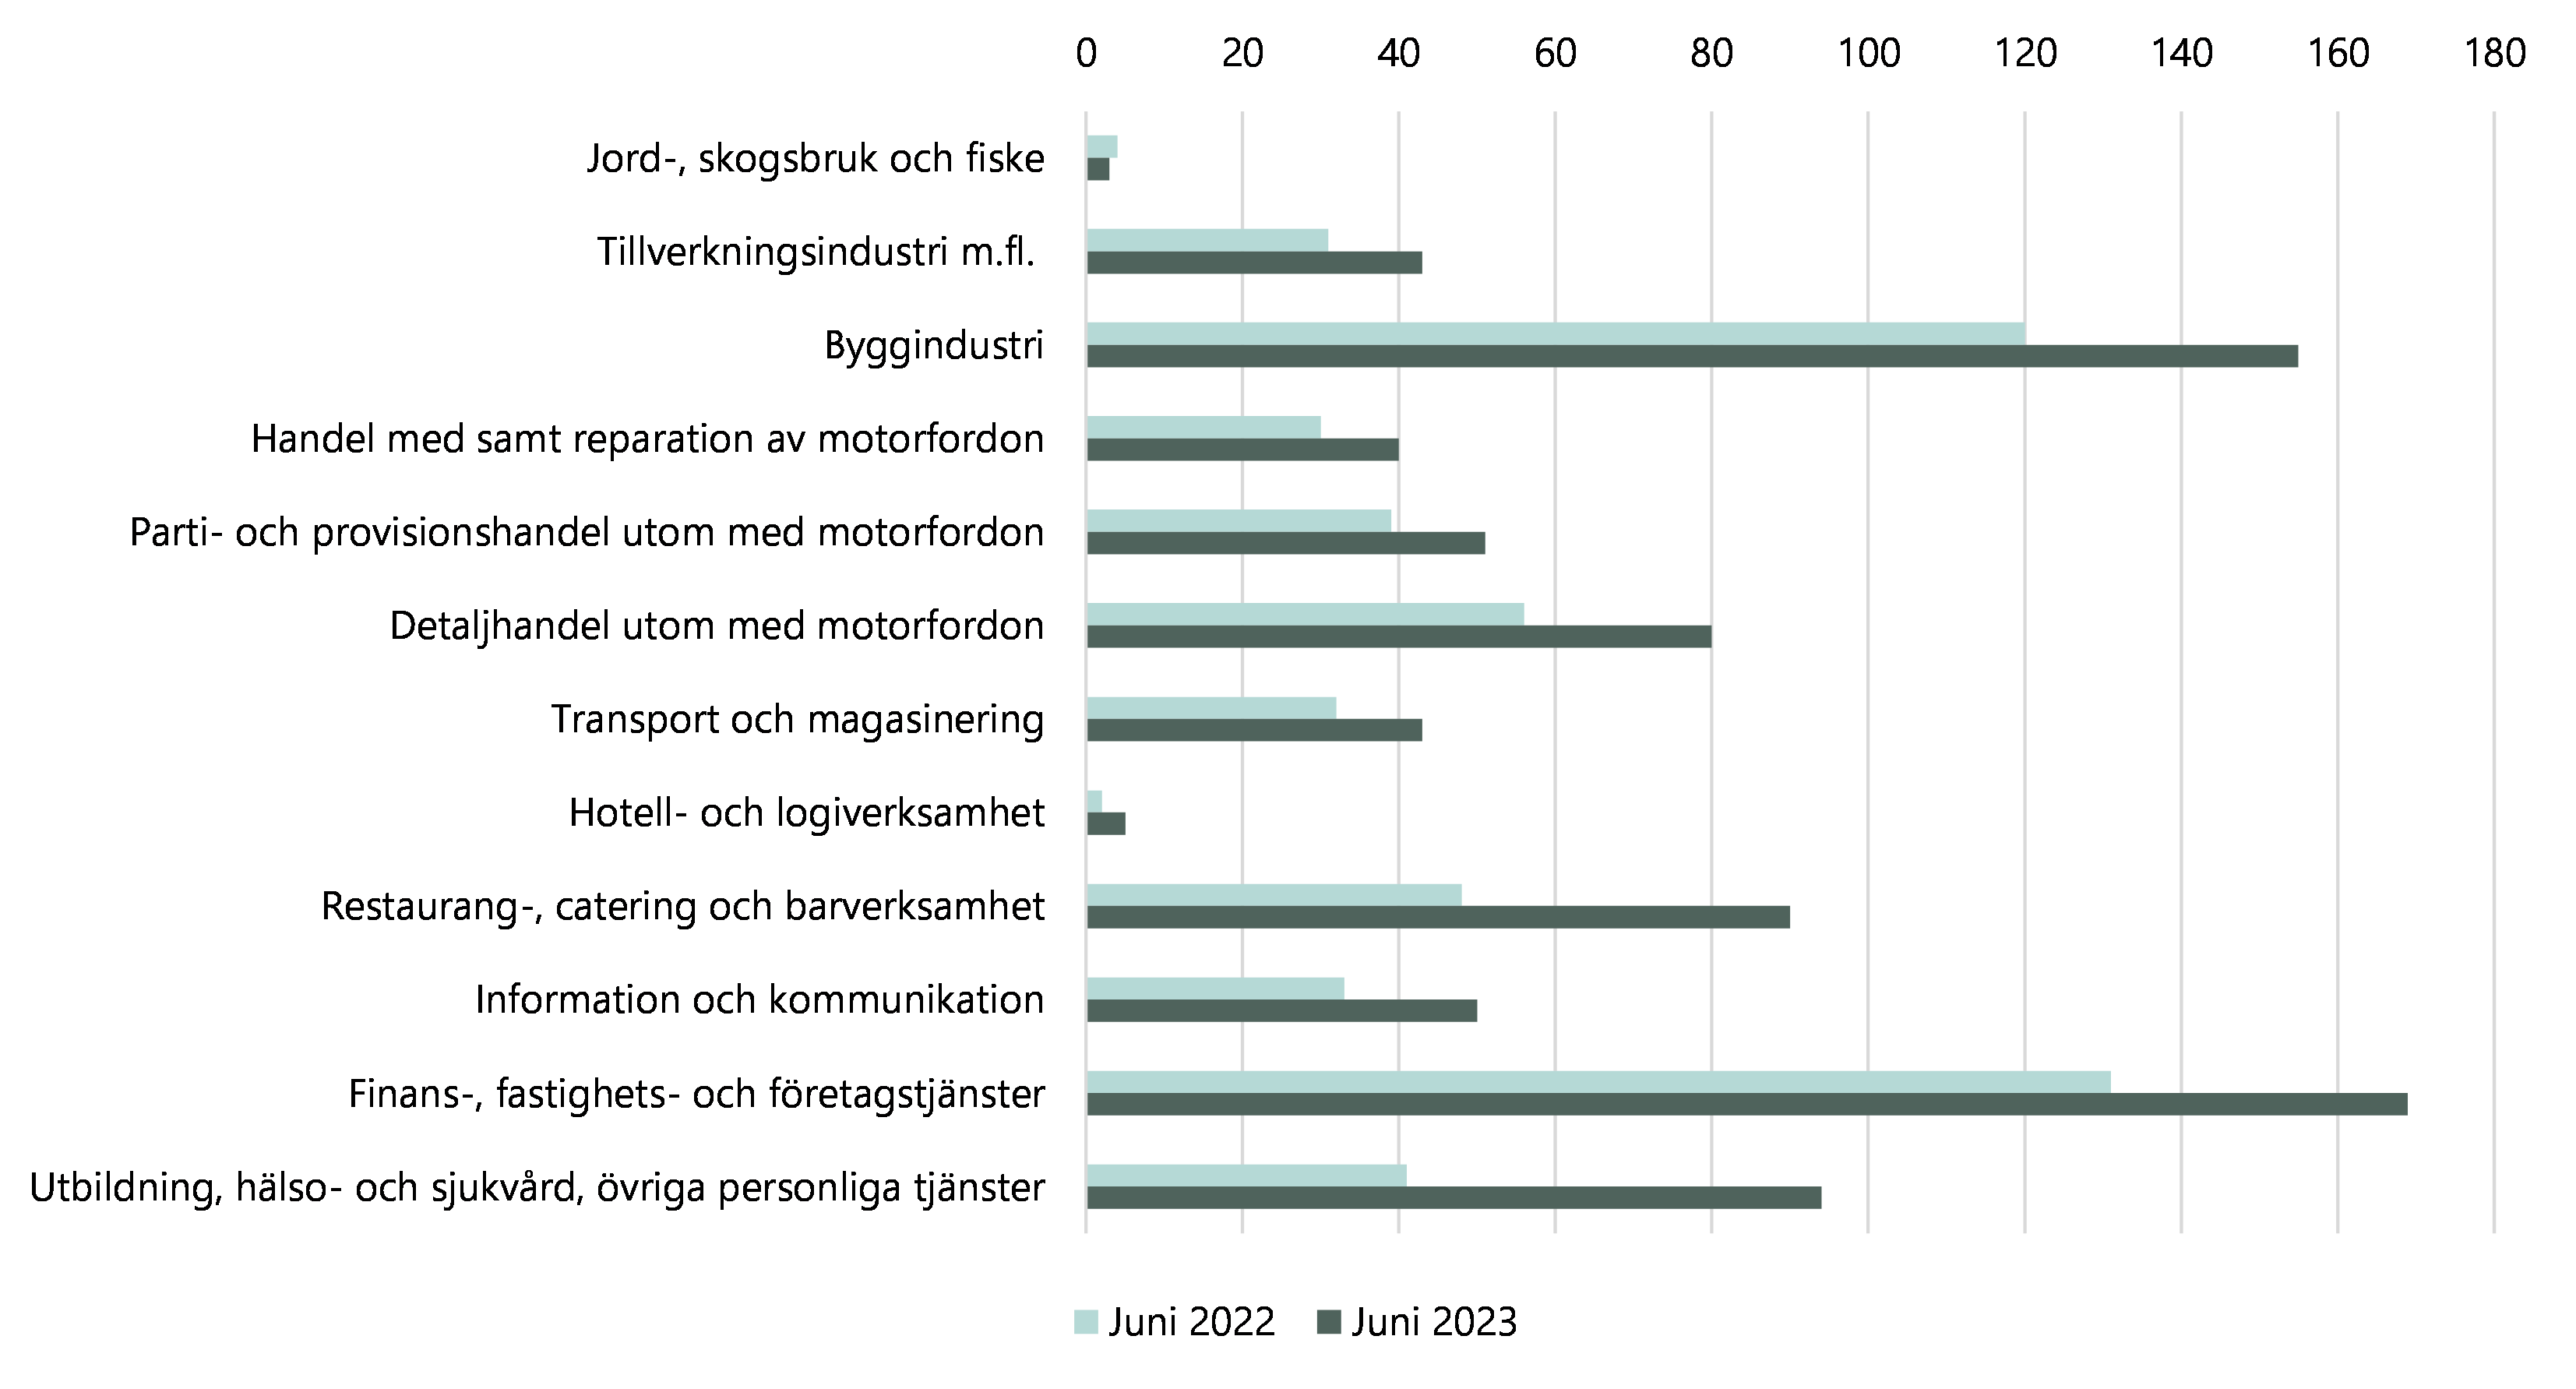 Diagram över antal företagskonkurser sett utifrån bransch, juni 2022 jämfört med juni 2023